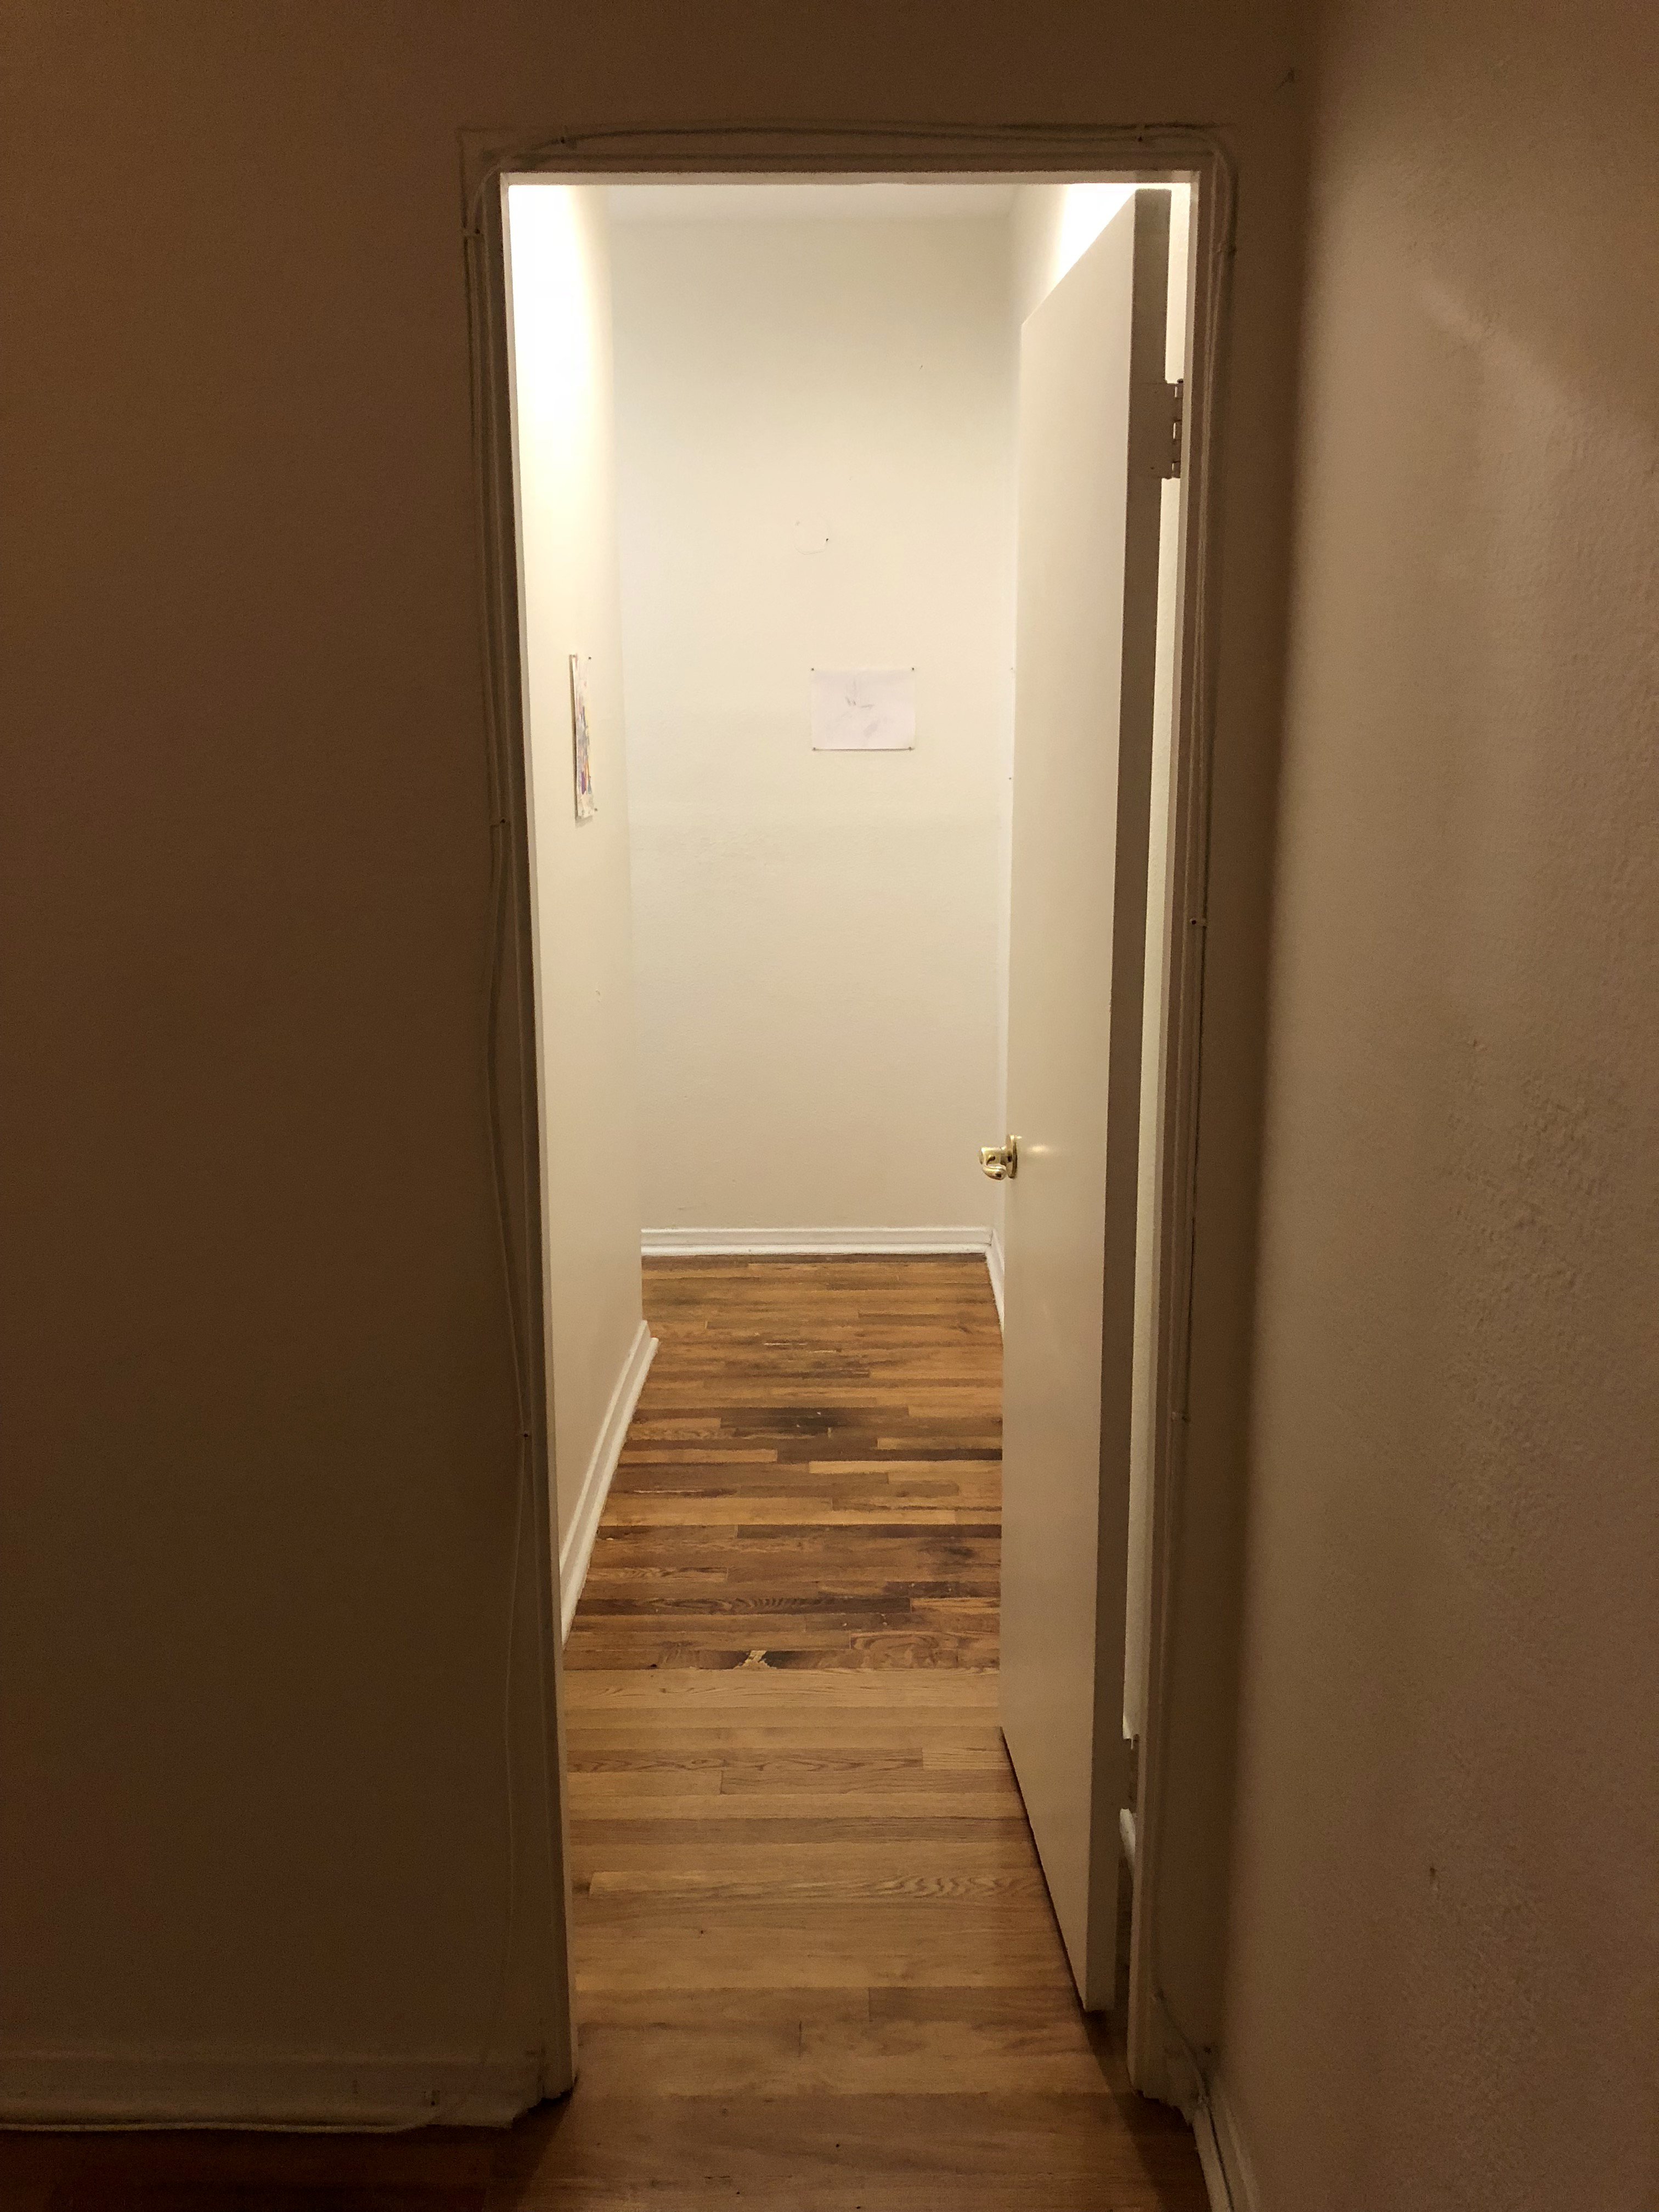 A narrow white hallway seen from an open door